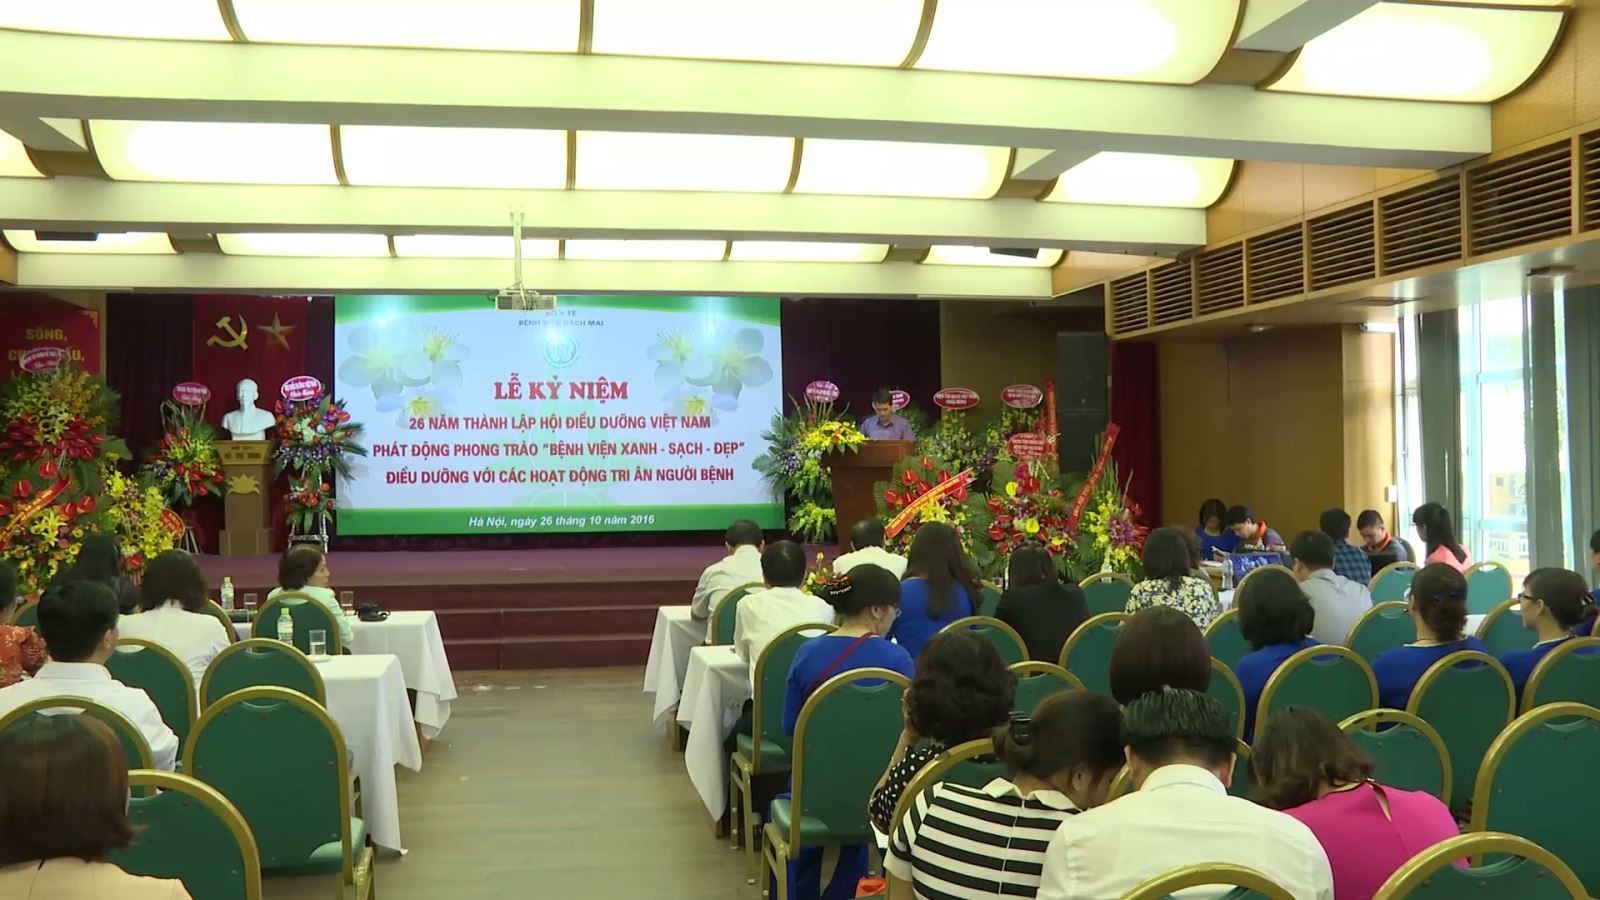 Kỷ niệm 26 năm thành lập Hội điều dưỡng Việt Nam